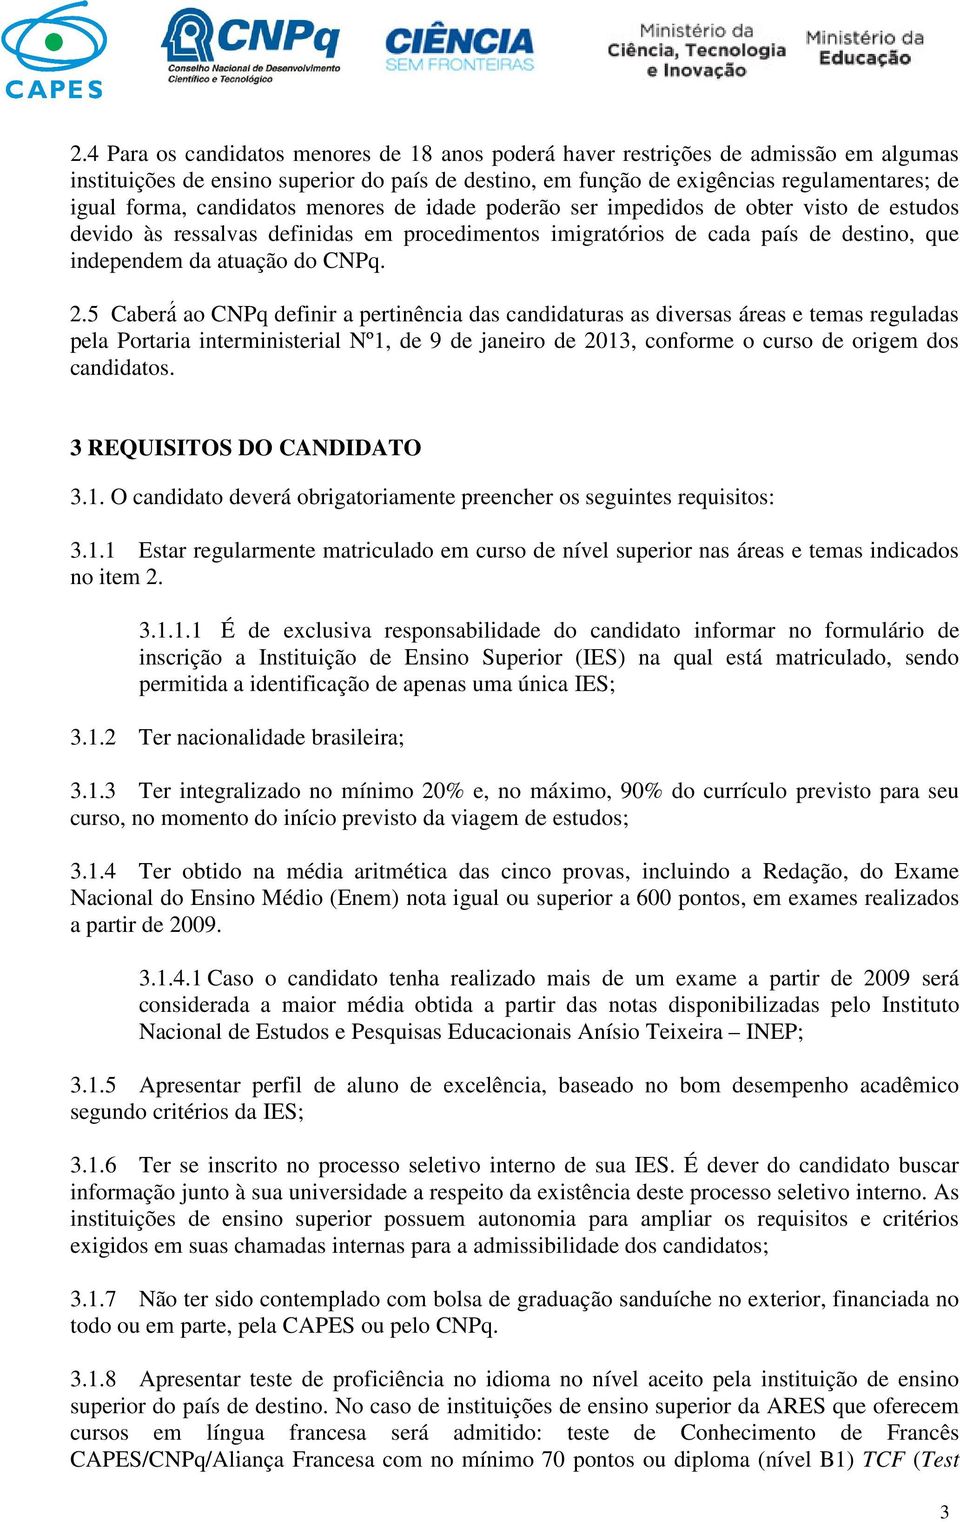 5 Caberá ao CNPq definir a pertinência das candidaturas as diversas áreas e temas reguladas pela Portaria interministerial Nº1, de 9 de janeiro de 2013, conforme o curso de origem dos candidatos.